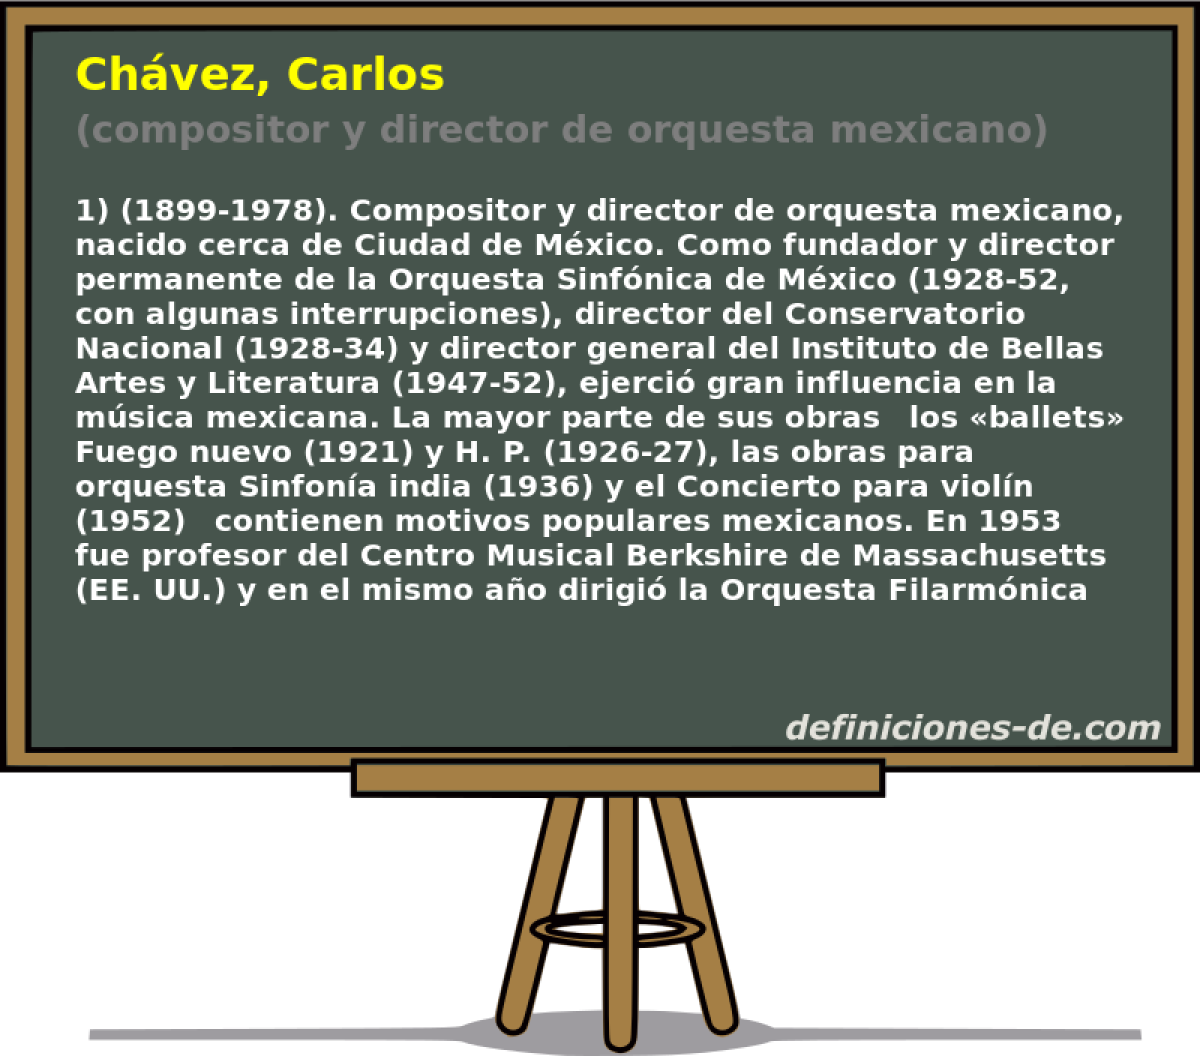 Chvez, Carlos (compositor y director de orquesta mexicano)